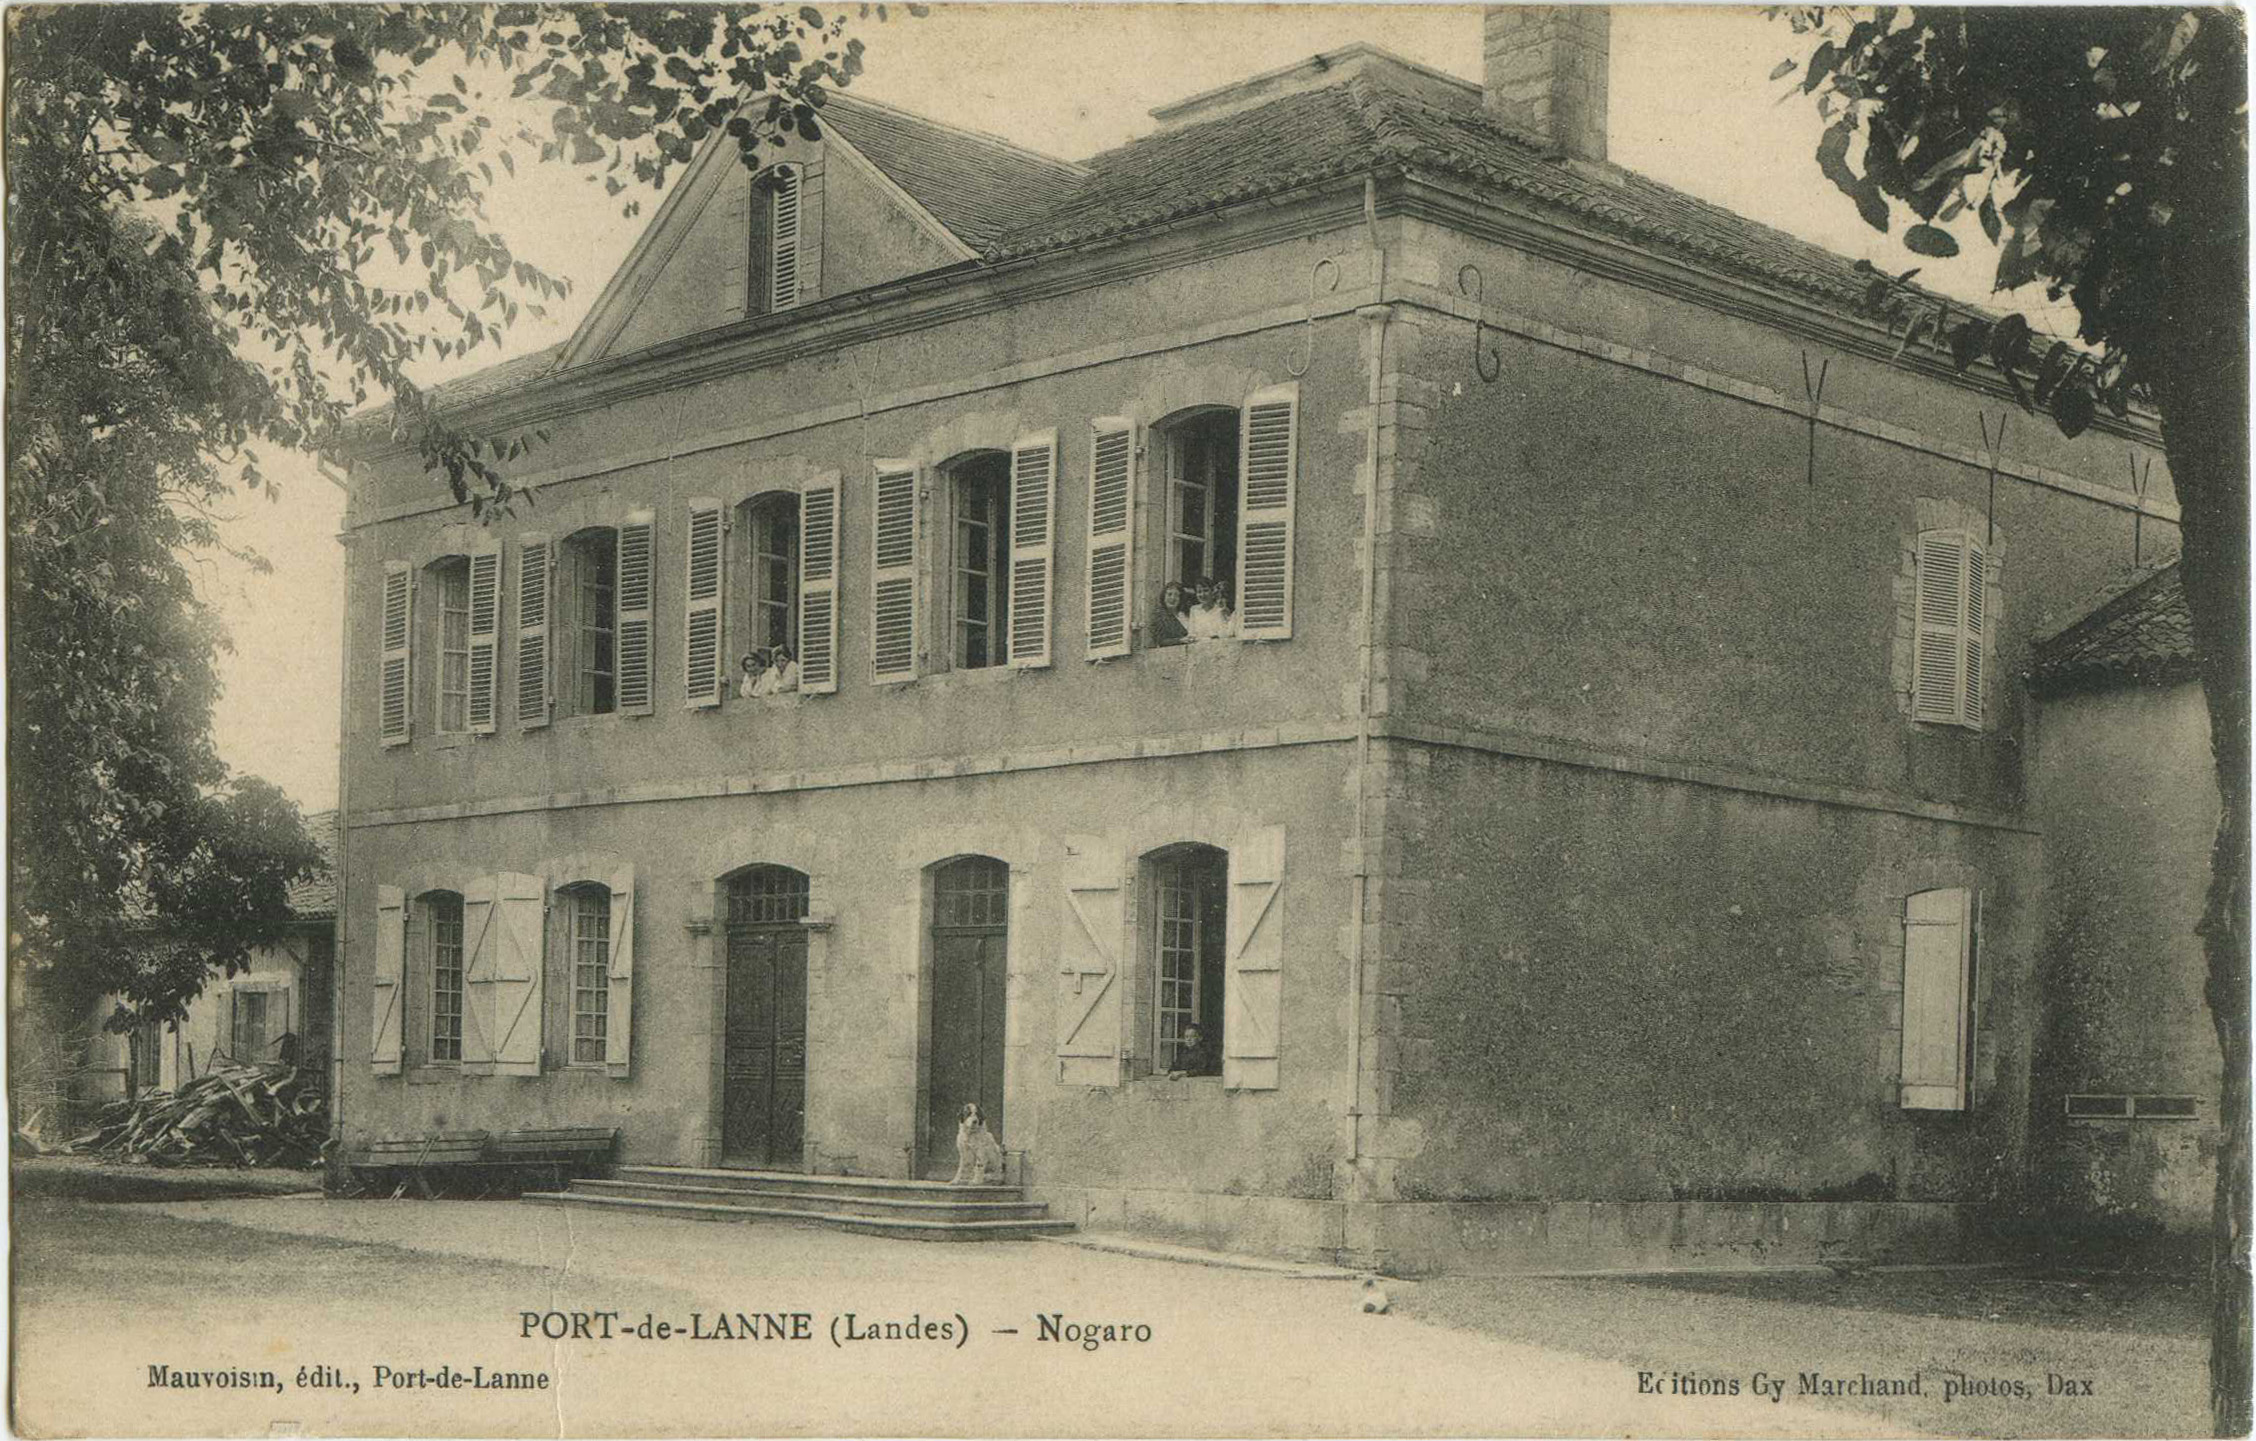 Port-de-Lanne - Nogaro